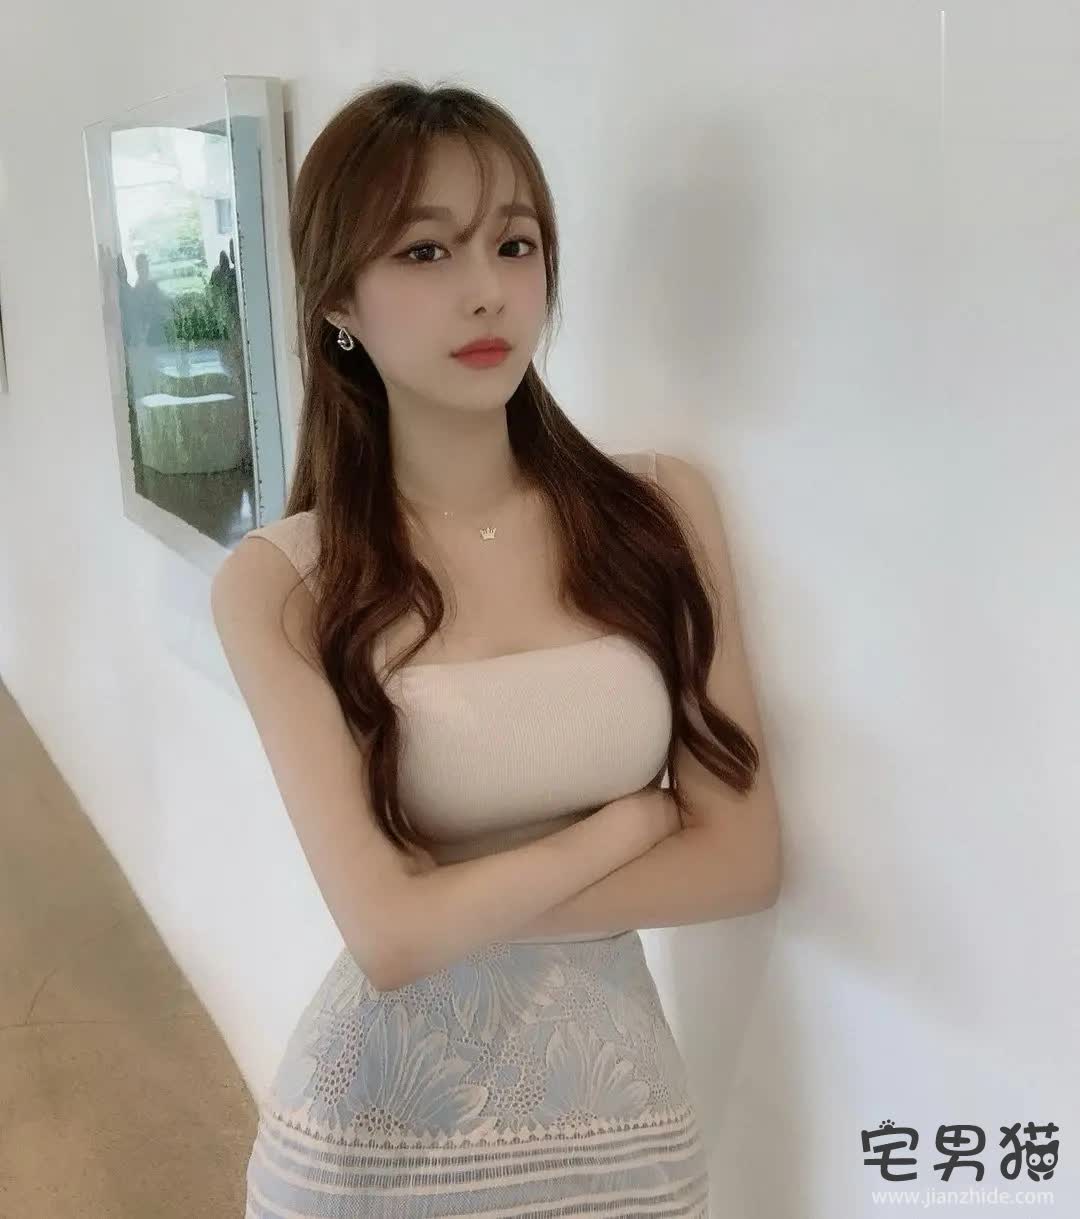 韩国超模美女思云(3533373037)性感身材s形曲线大长腿写真